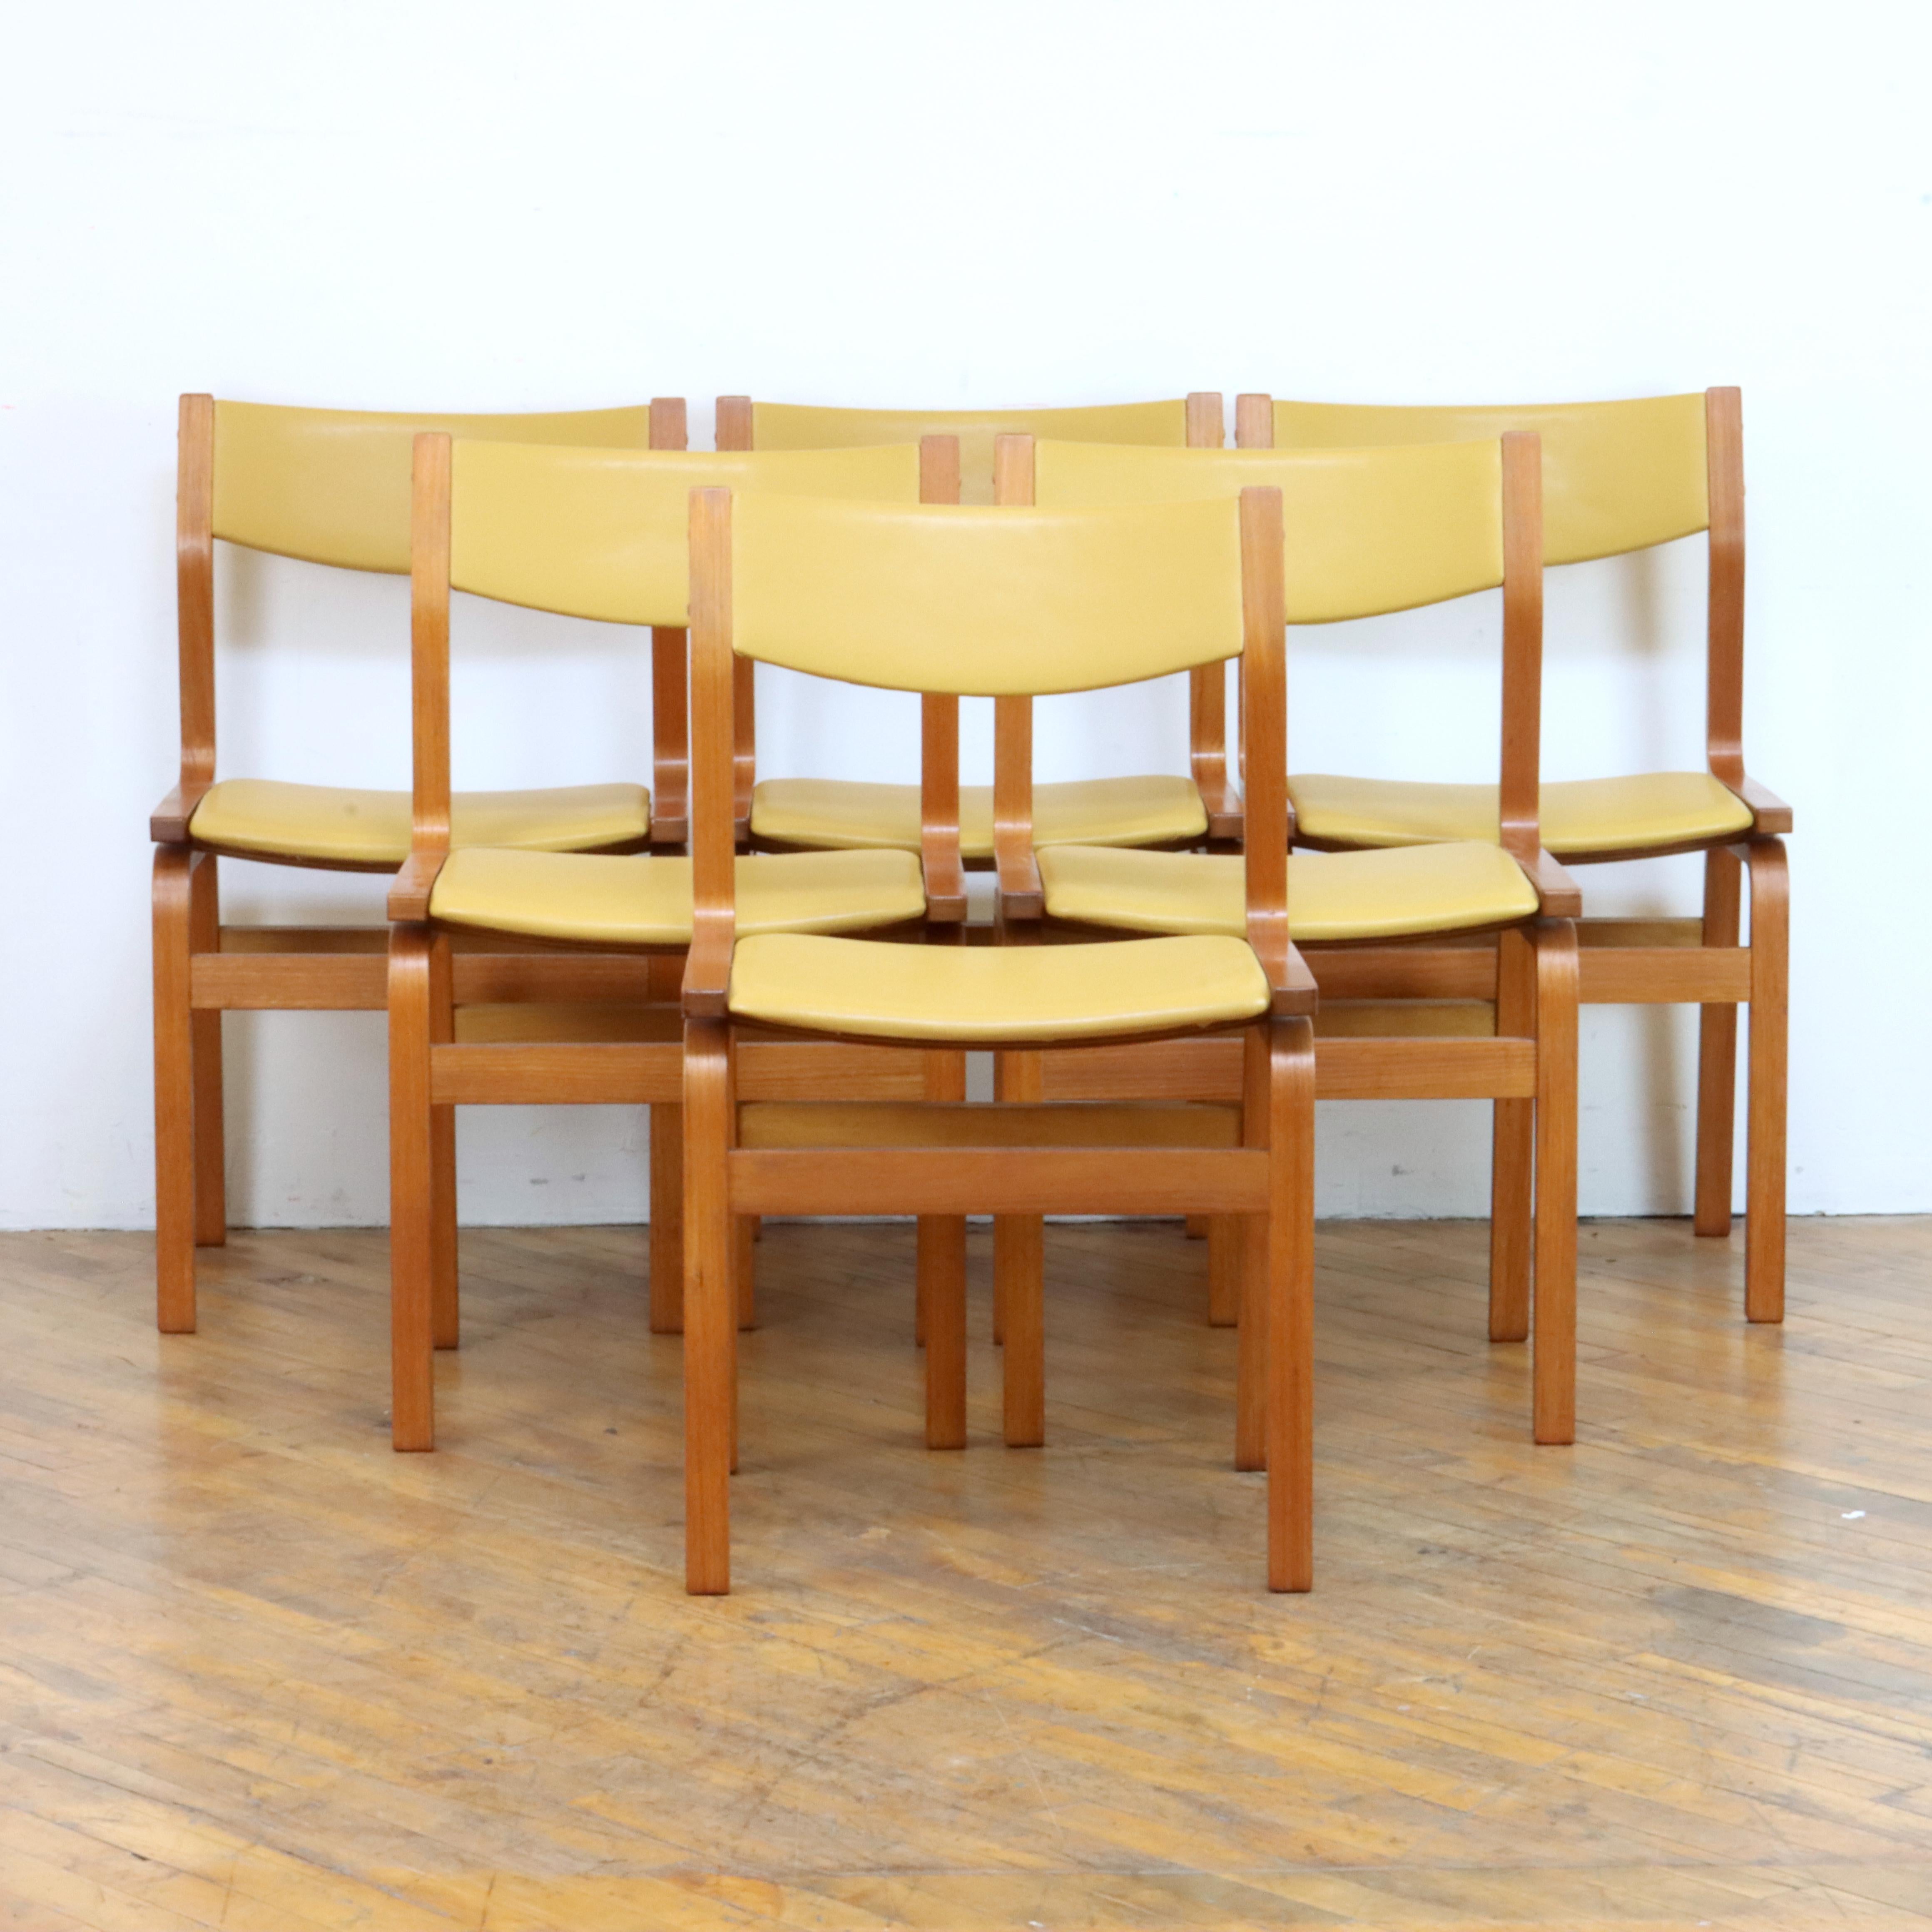 Charmant ensemble de chaises de salle à manger danoises d'après la chaise Sainte-Catherine d'Arne Jacobsen, conçue pour le St. Catherine's College d'Oxford, en Angleterre. Simples et élégantes, les chaises sont construites en contreplaqué moulé